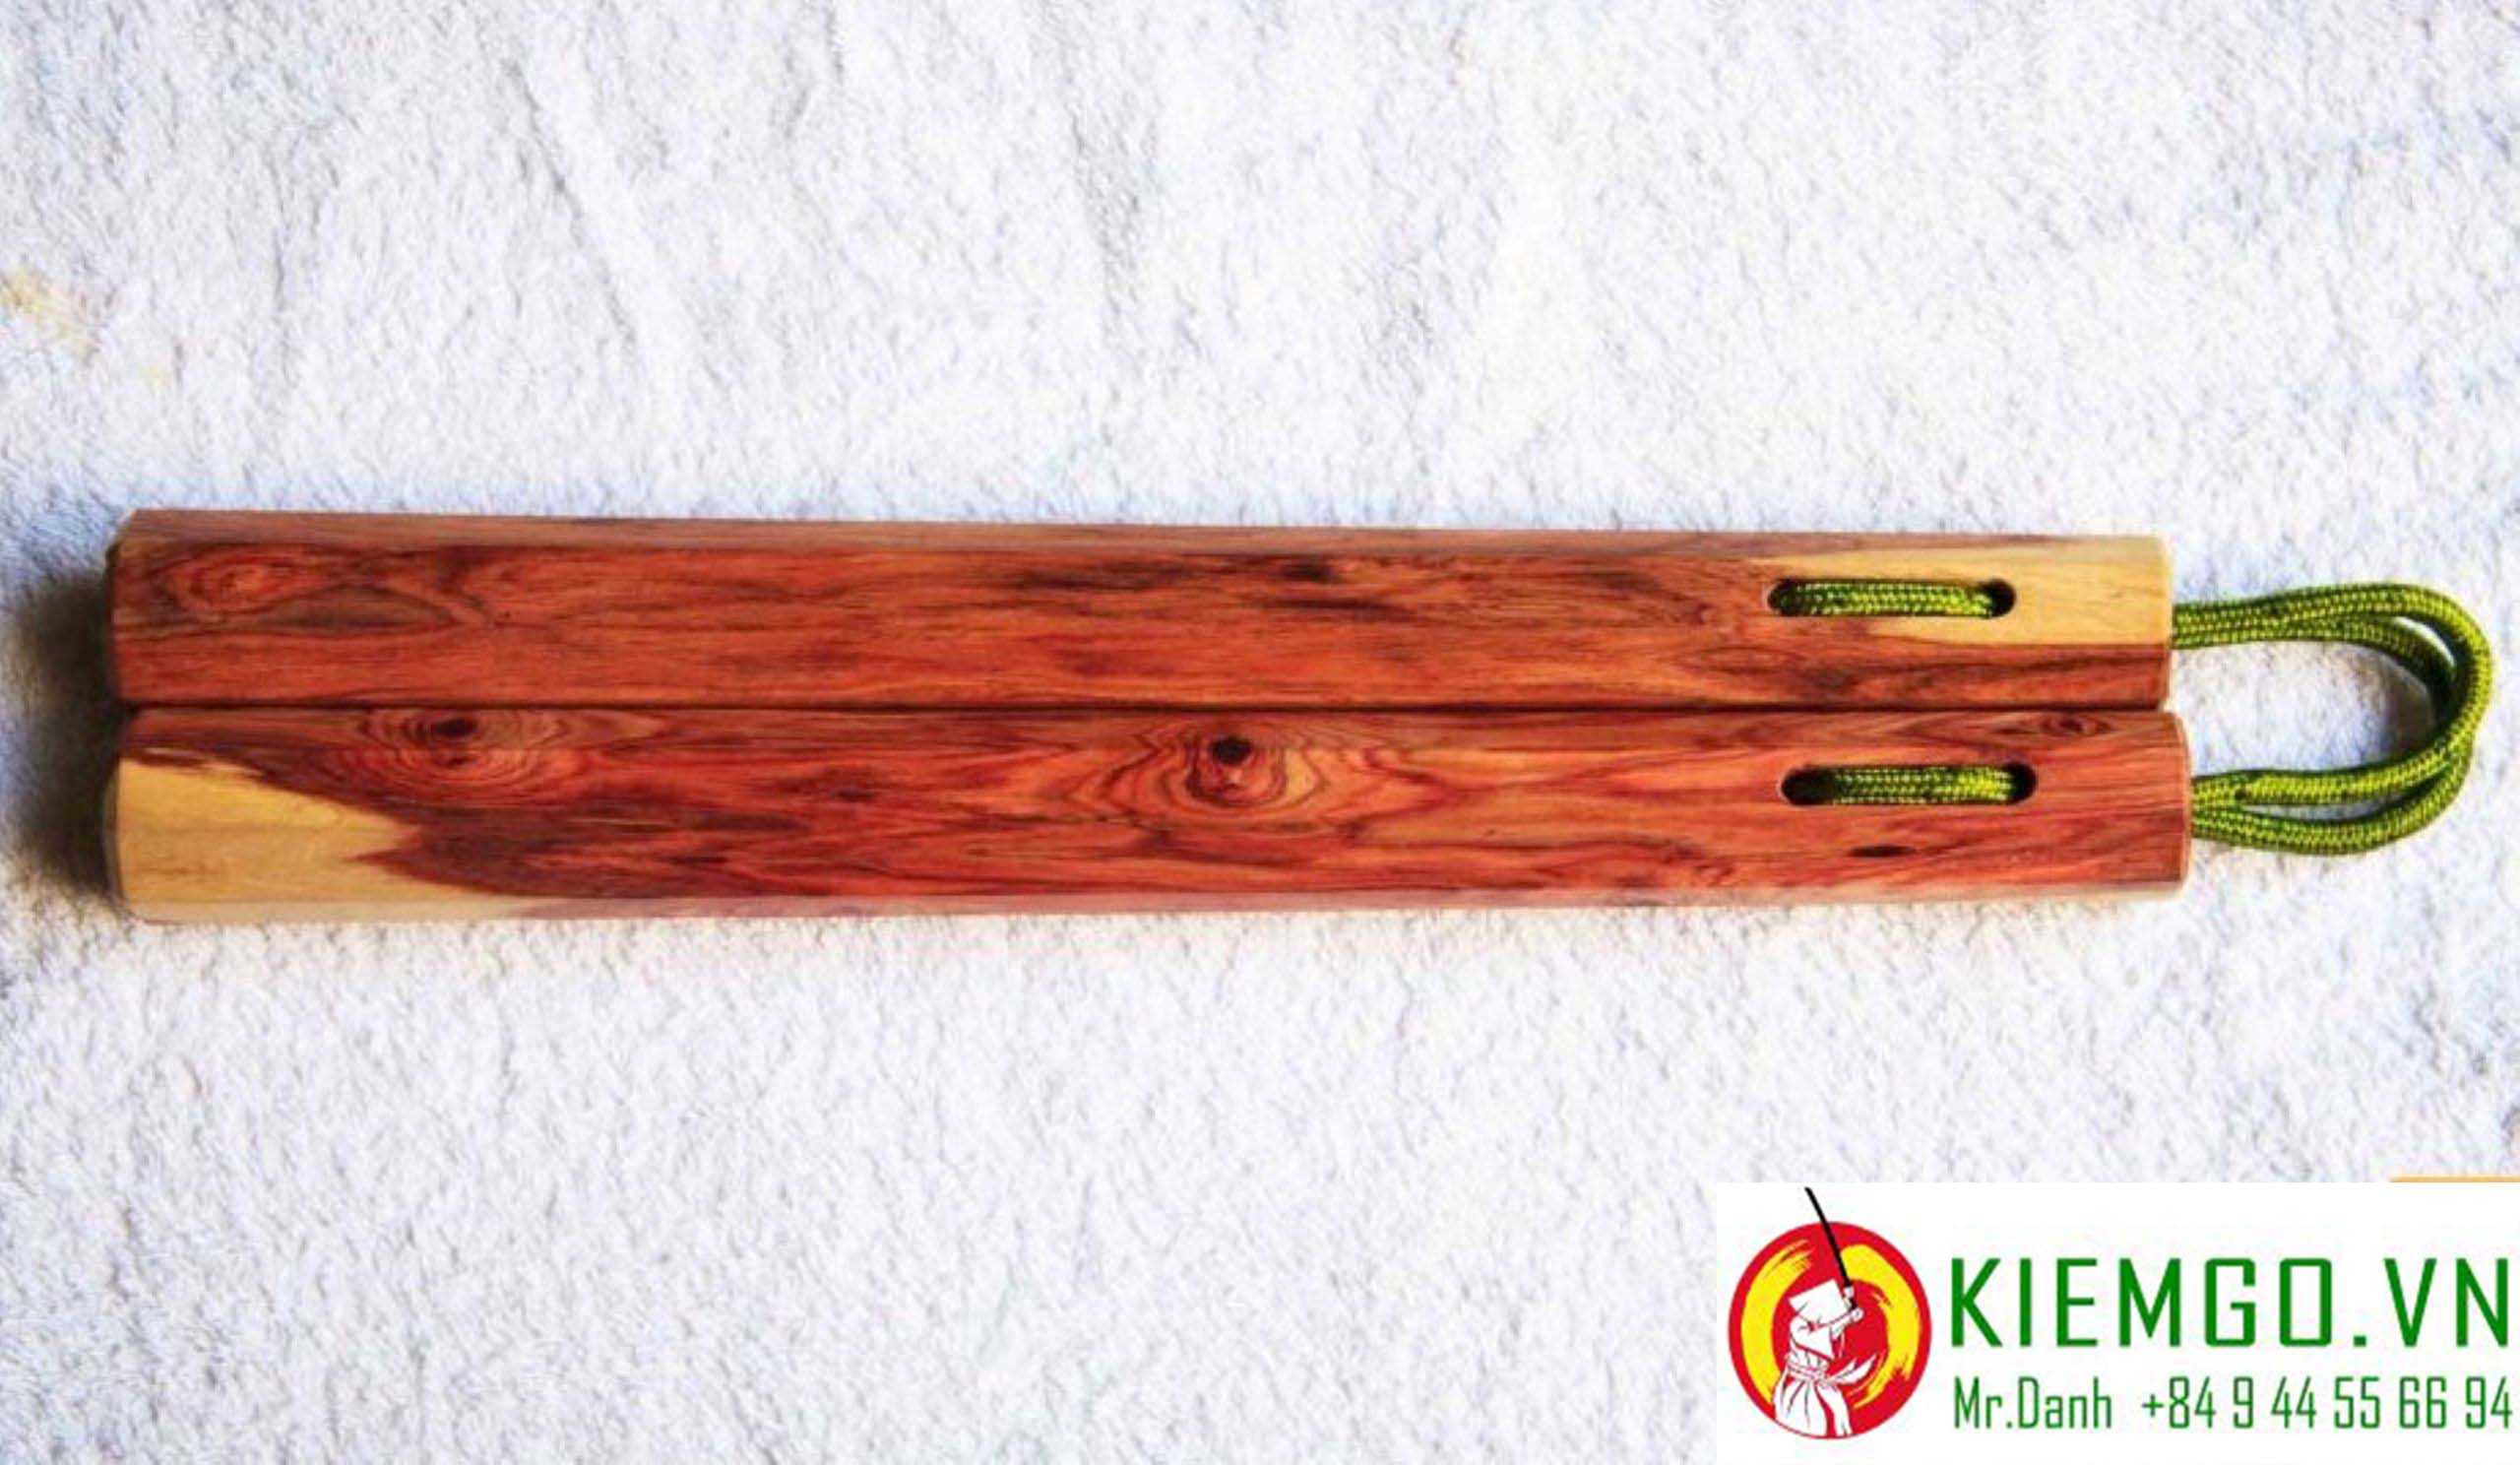 con-nhi-khuc-go-trac-day là loại côn nhị khúc gỗ quý hiếm của việt nam, chất lượng gỗ được đánh giá cao về thẩm mỹ lẫn độ cứng và dẽo dai, hoa văn rất đặc trưng của gỗ trắc dây